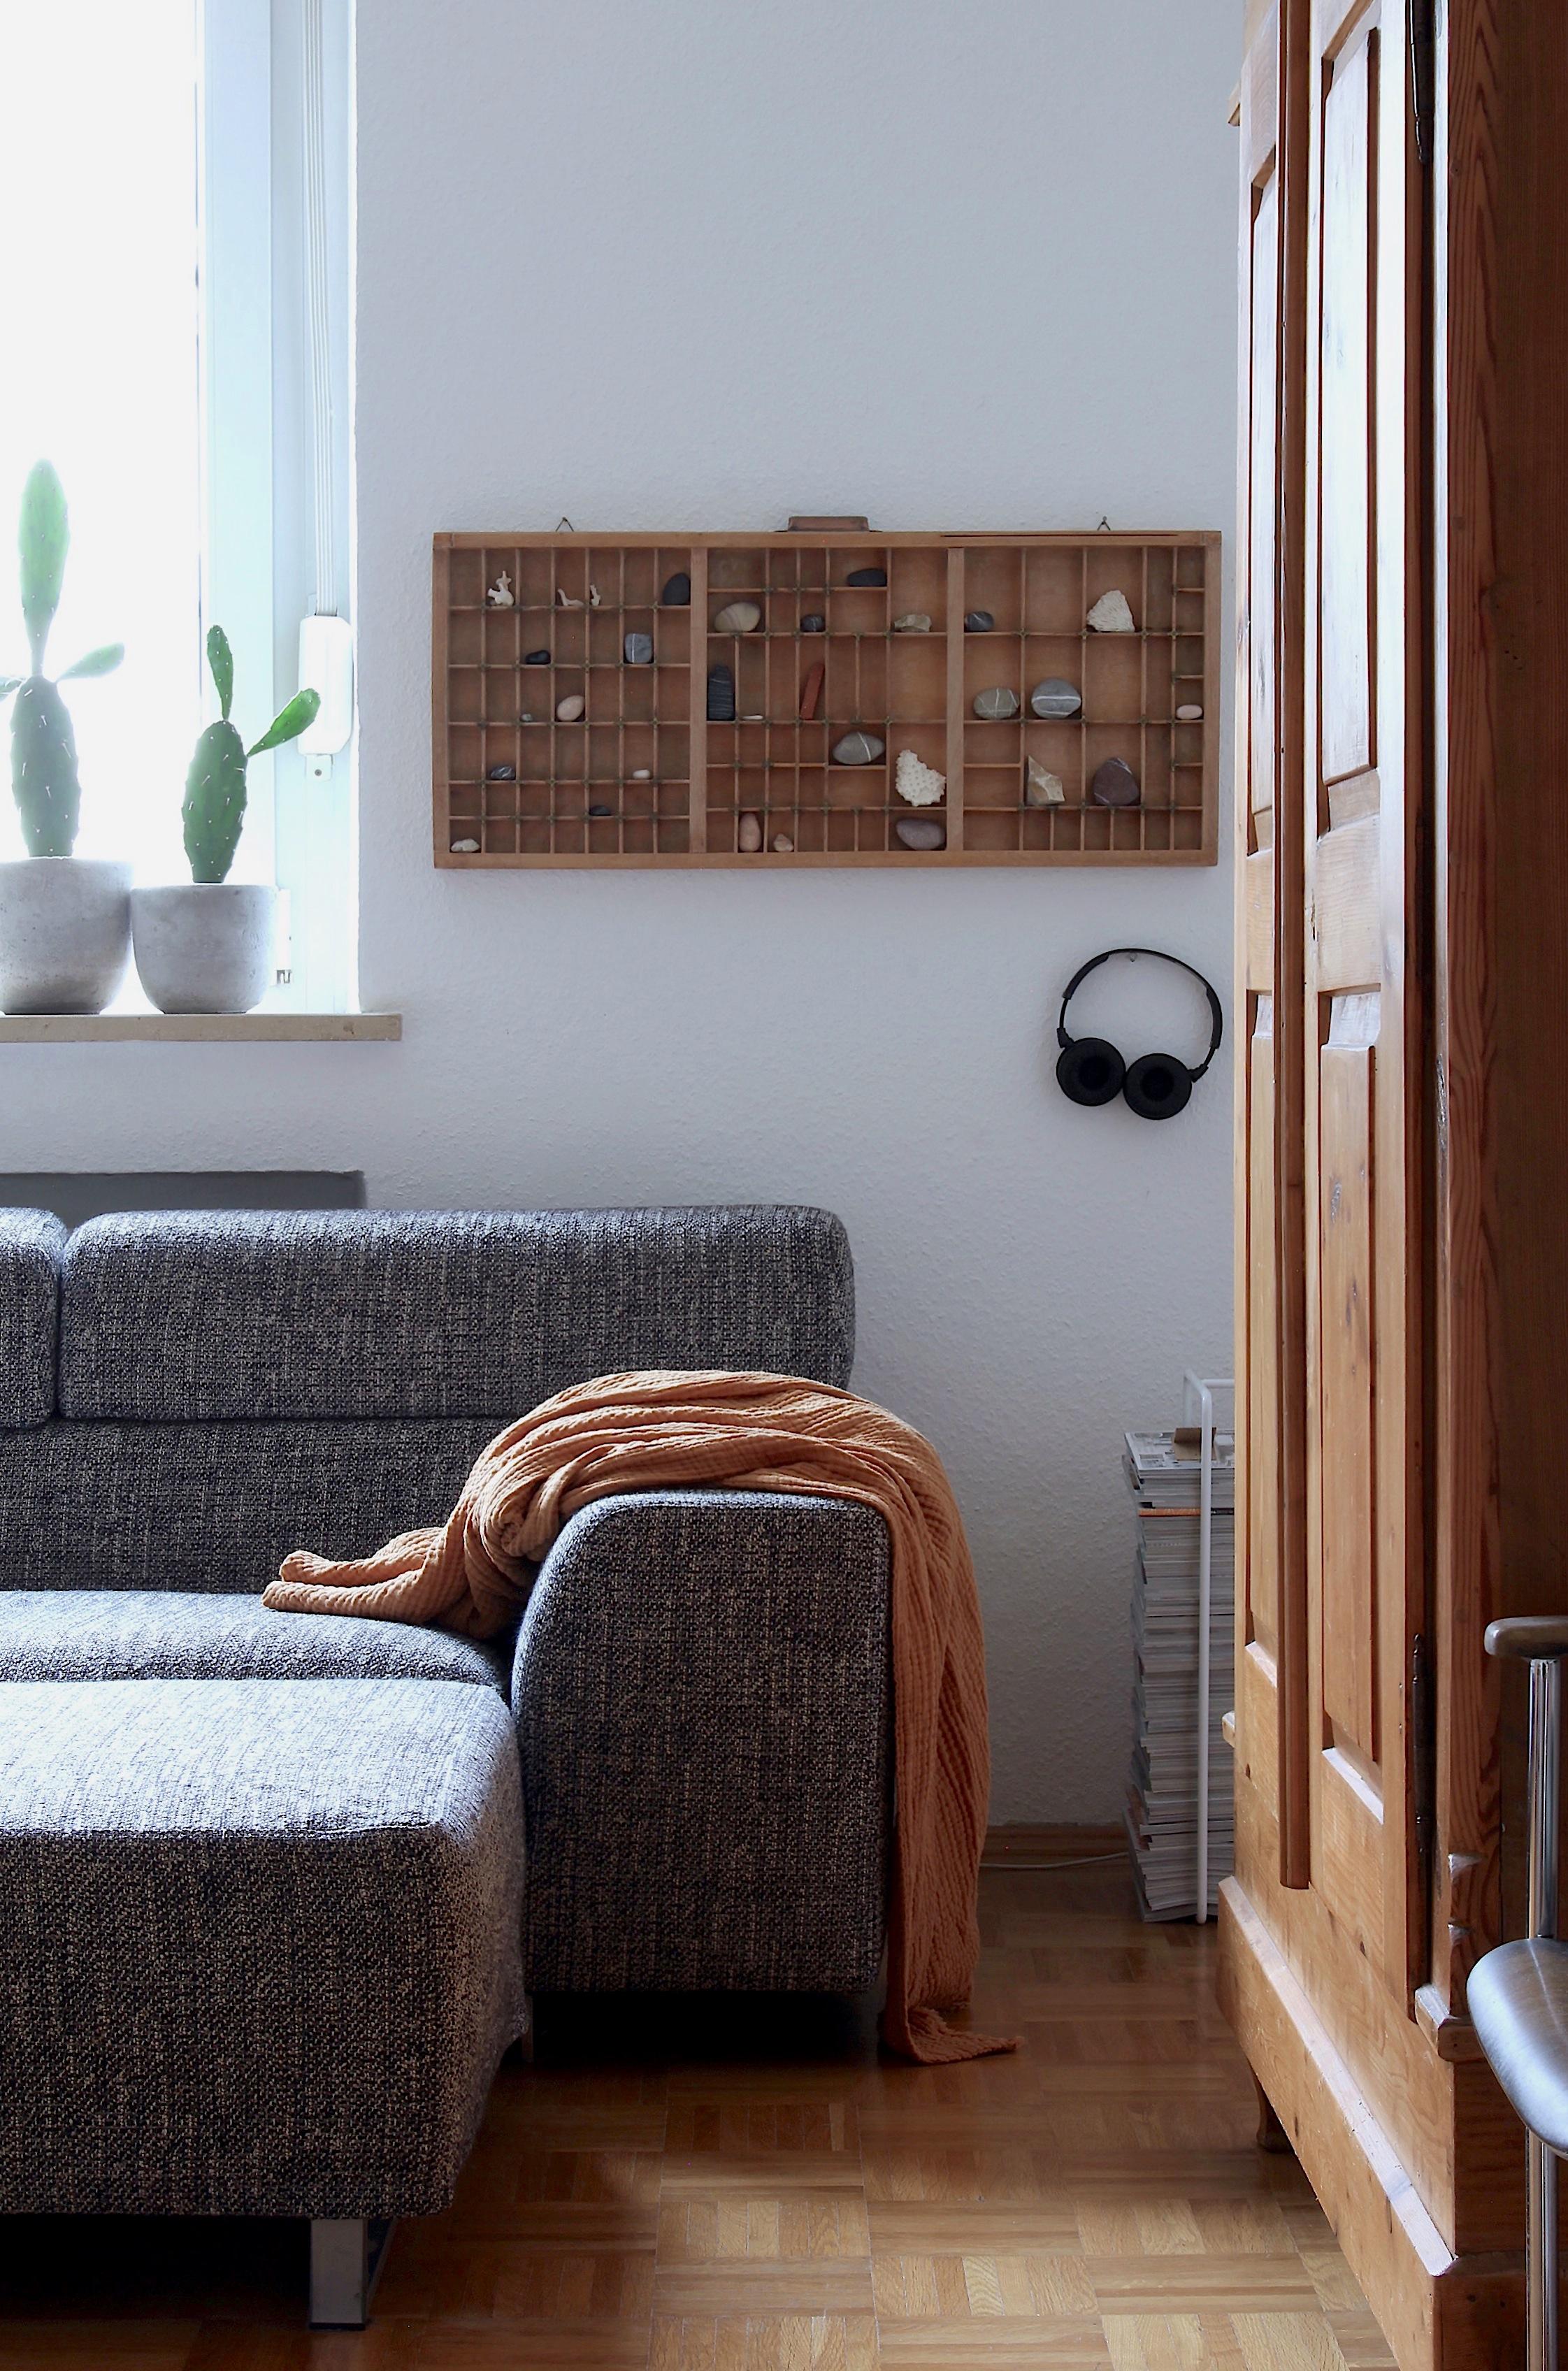 Setzkasten umgehängt, neue Decke gibt eine neue Ecke!

#herbstdeko #setzkasten #vintageliebe #livingroom #sofaecke